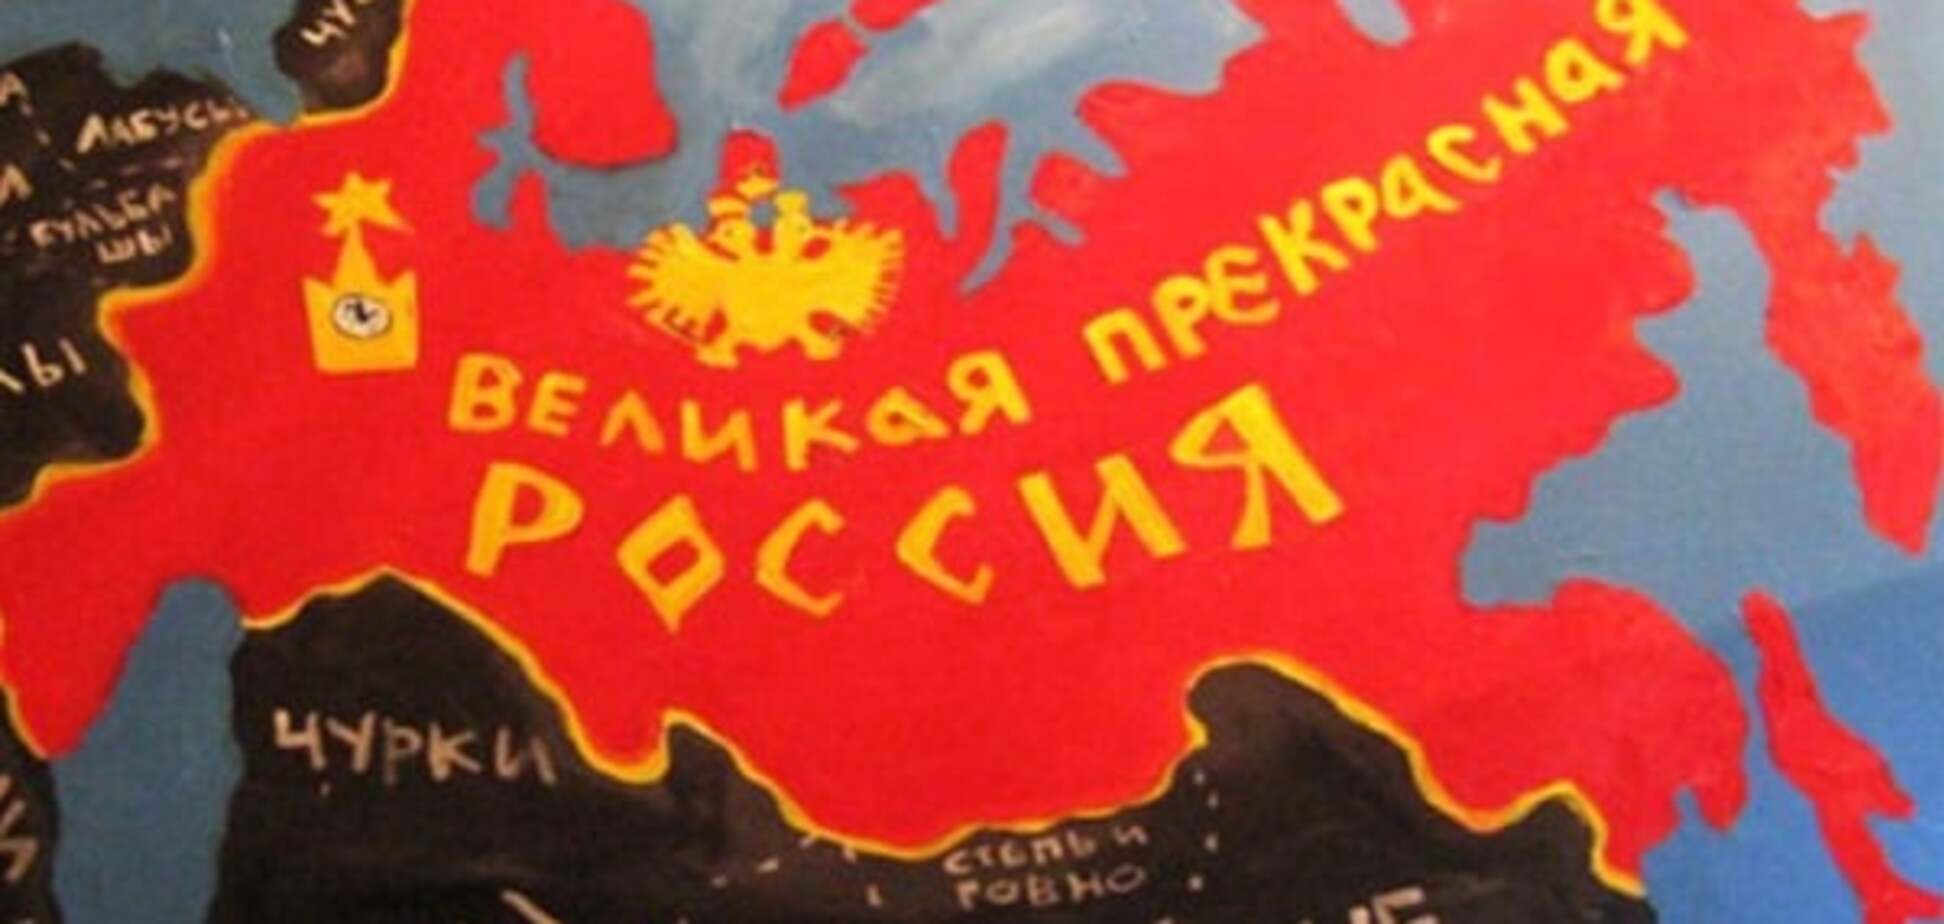 Бензоколонка, агрессор и недолибералы: Шевцова составила портрет современной России